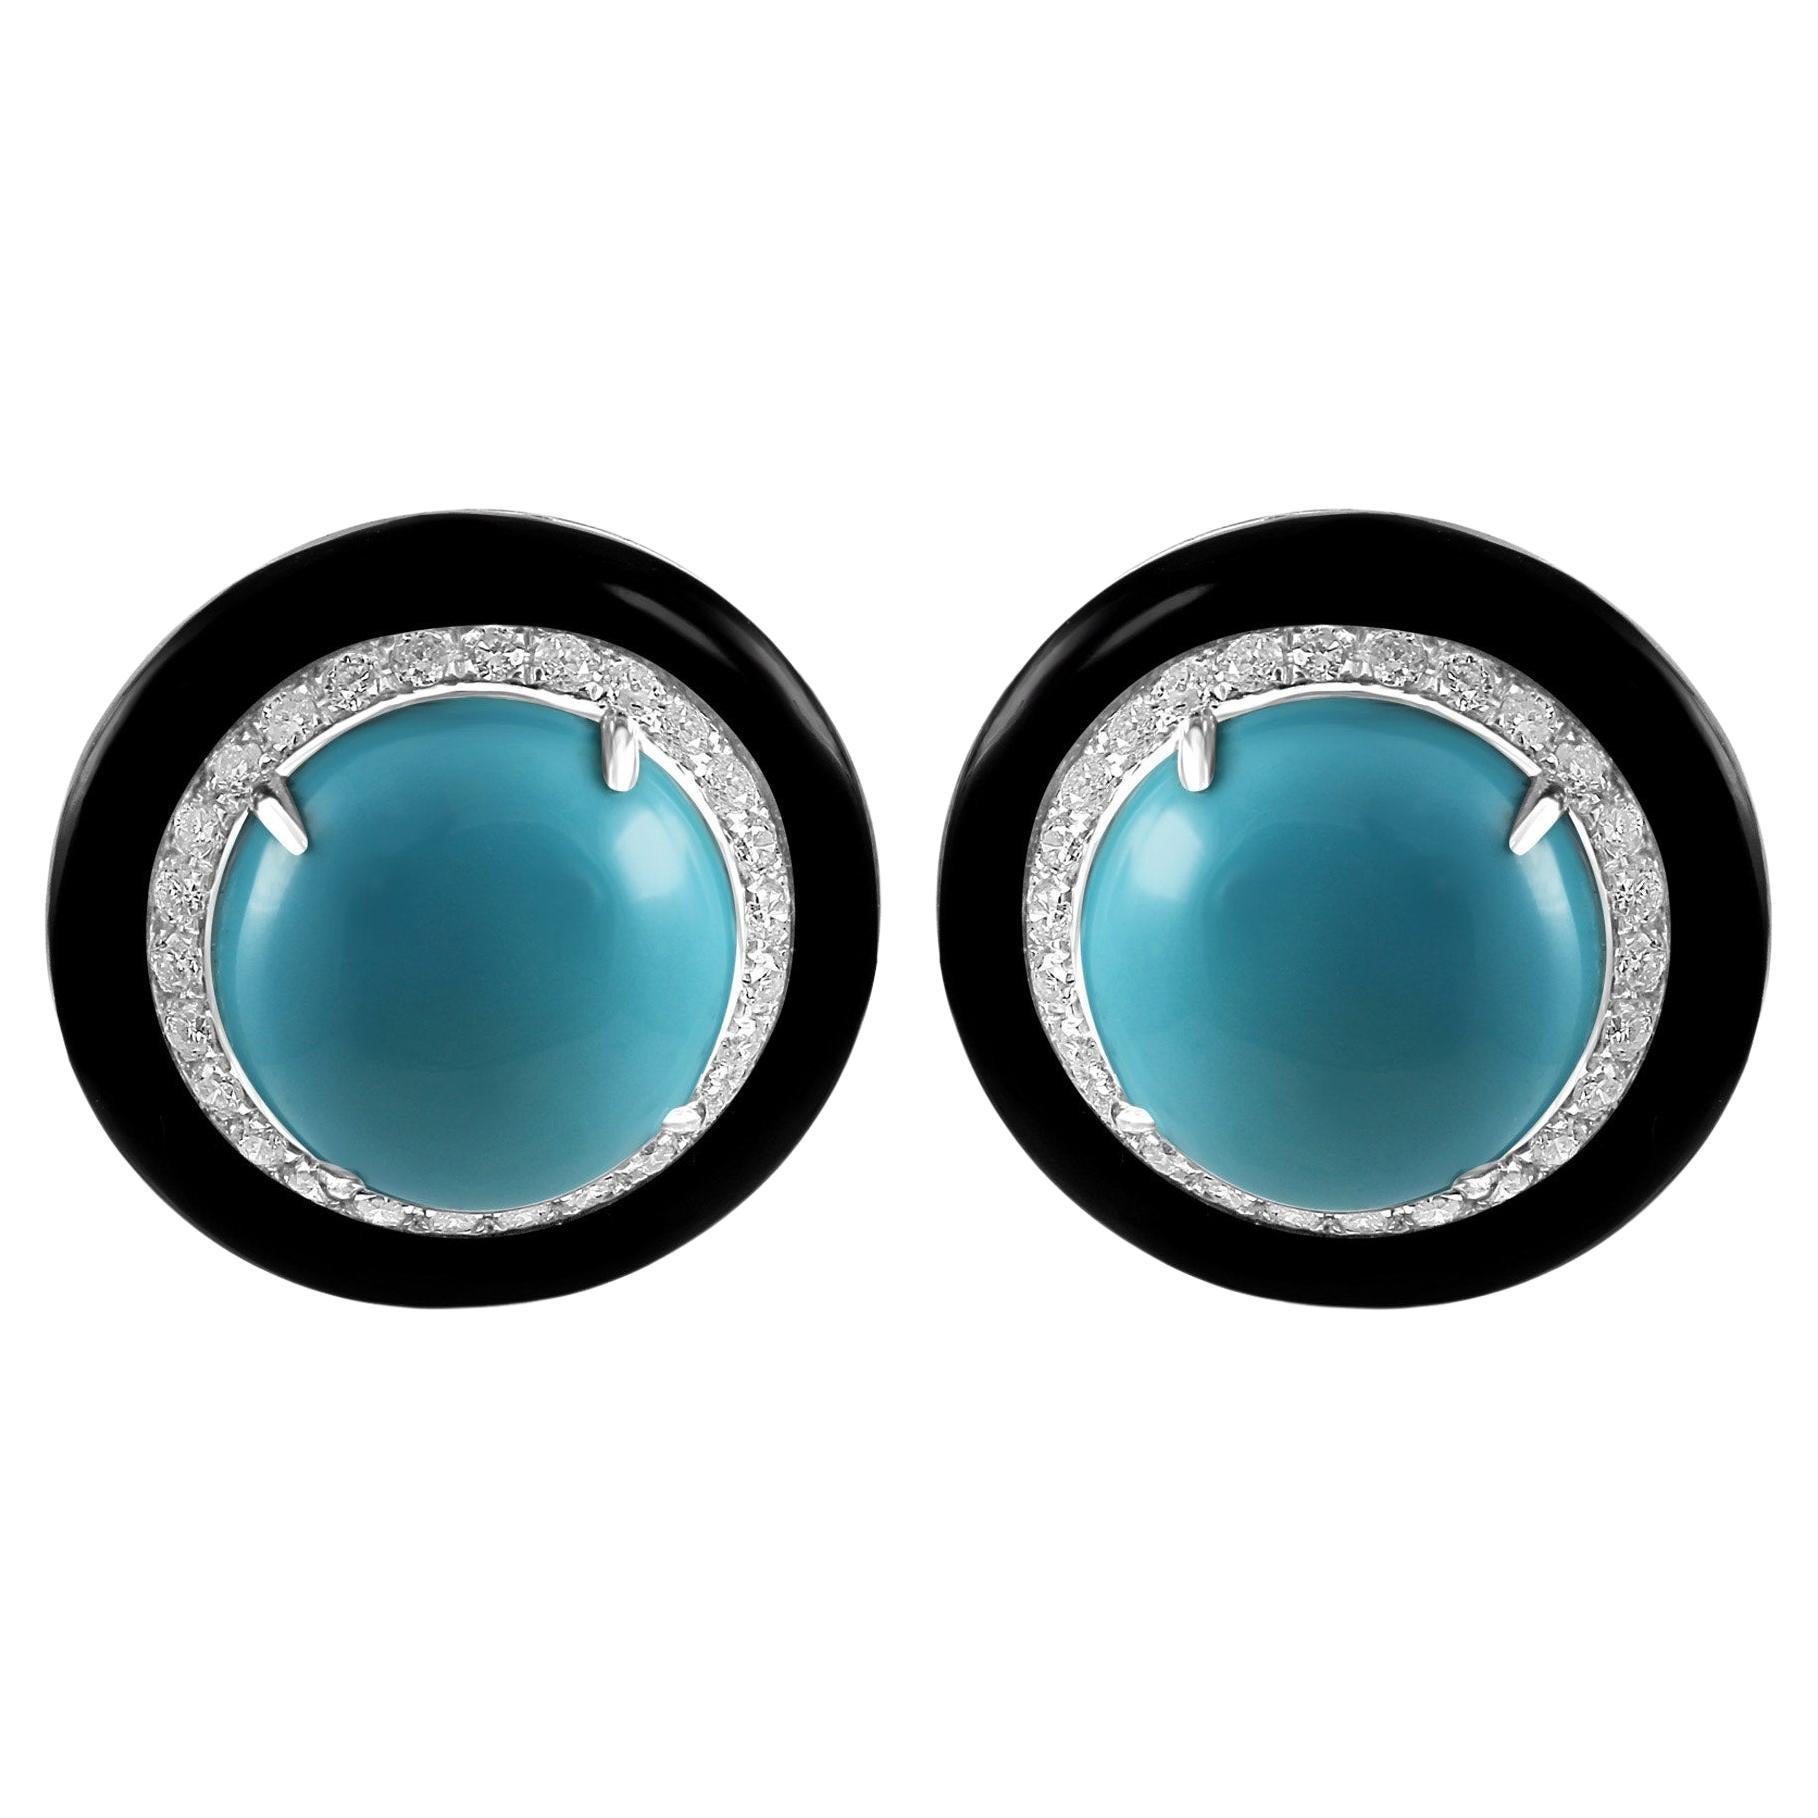 Turquoise Diamant rond Onyx noir Halo Or blanc 18K Boucle d'oreille Cocktail Art Déco